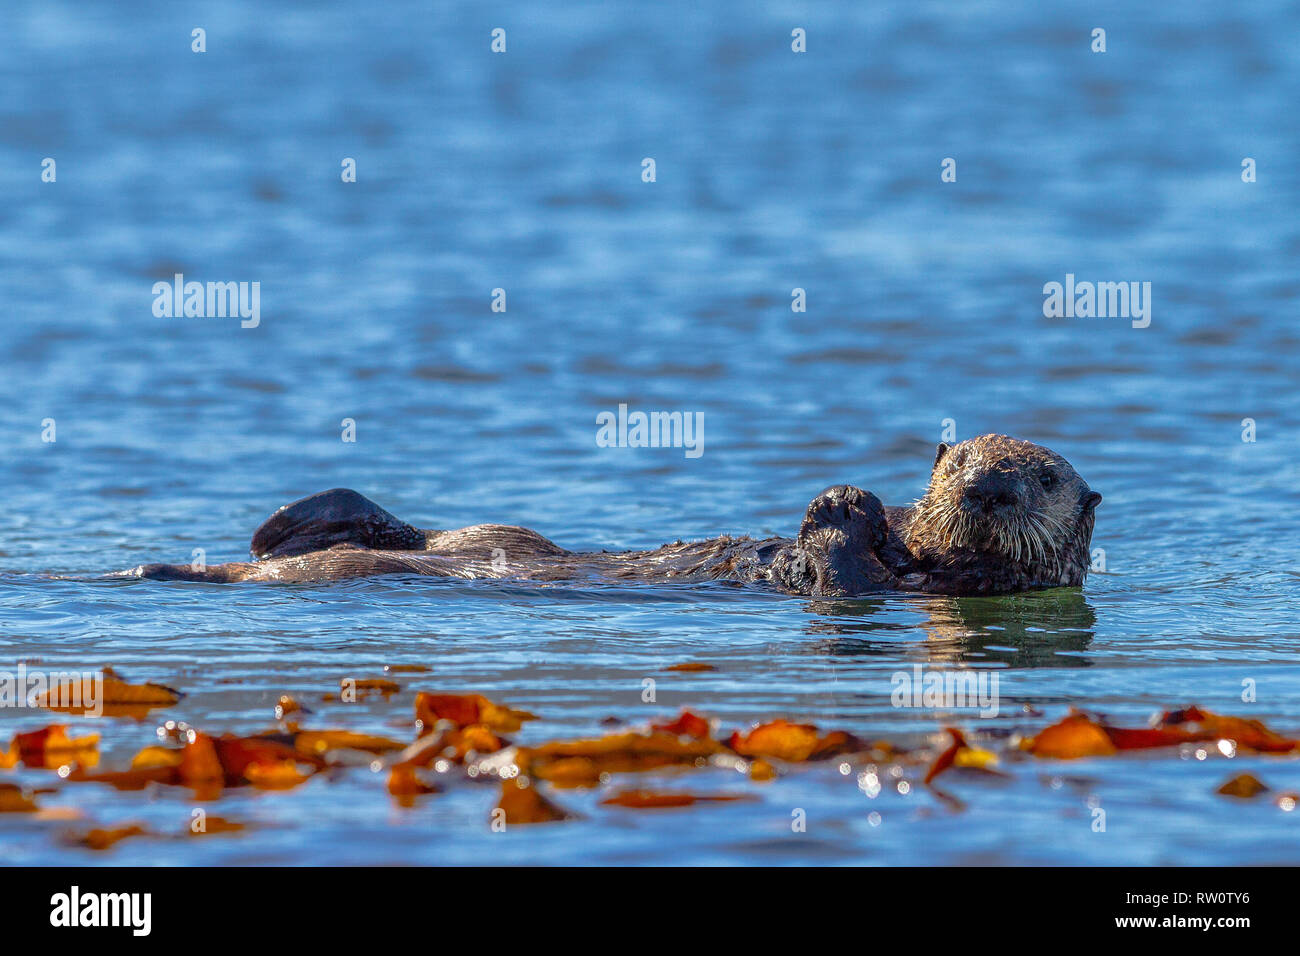 Sea otter off the northwestern Vancouver Island shore, Cape Scott, British Columbia, Canada. Stock Photo